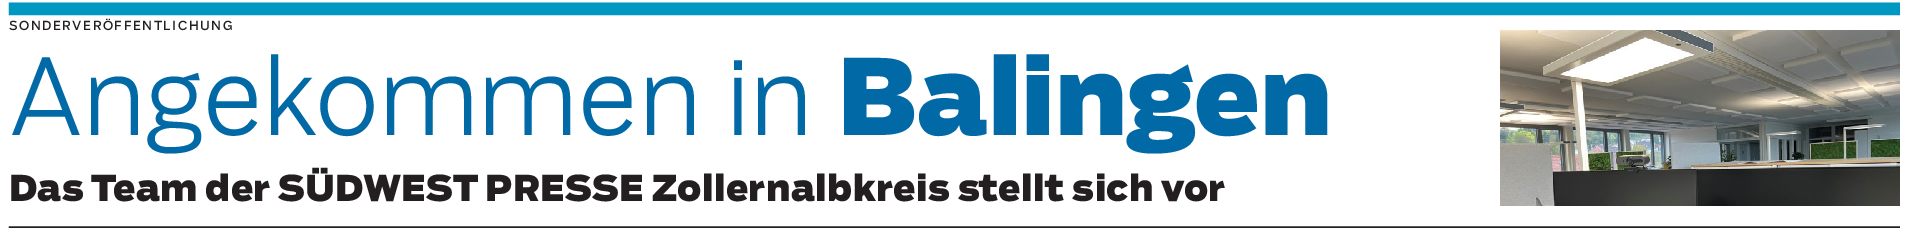 SÜDWEST PRESSE Zollernalbkreis in Balingen: Mooswände und unverbaubare Aussicht